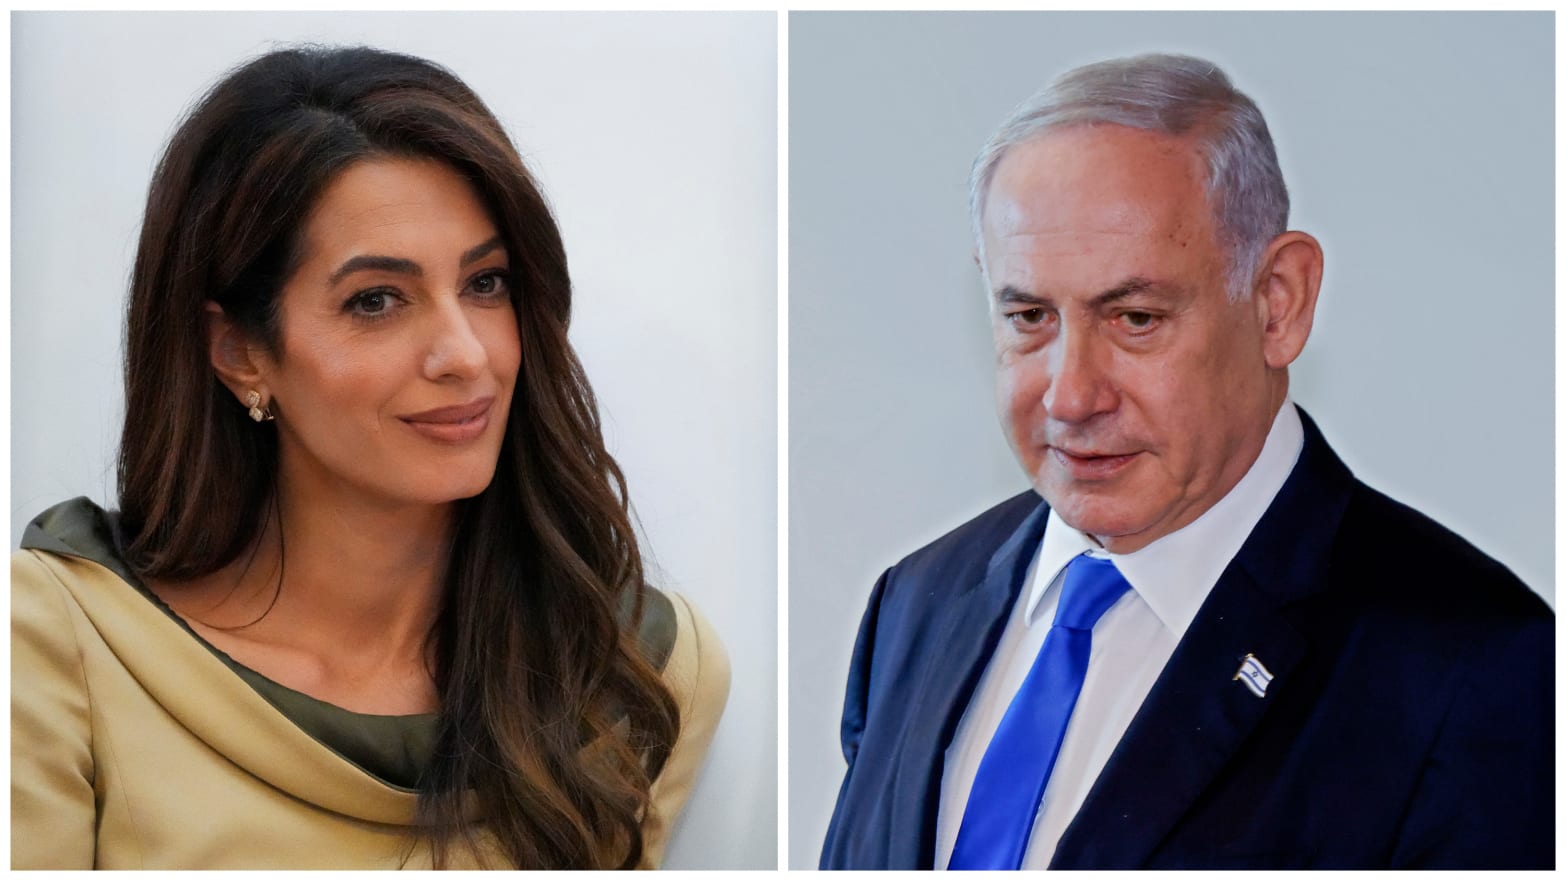 Amal Clooney and Benjamin Netanyahu